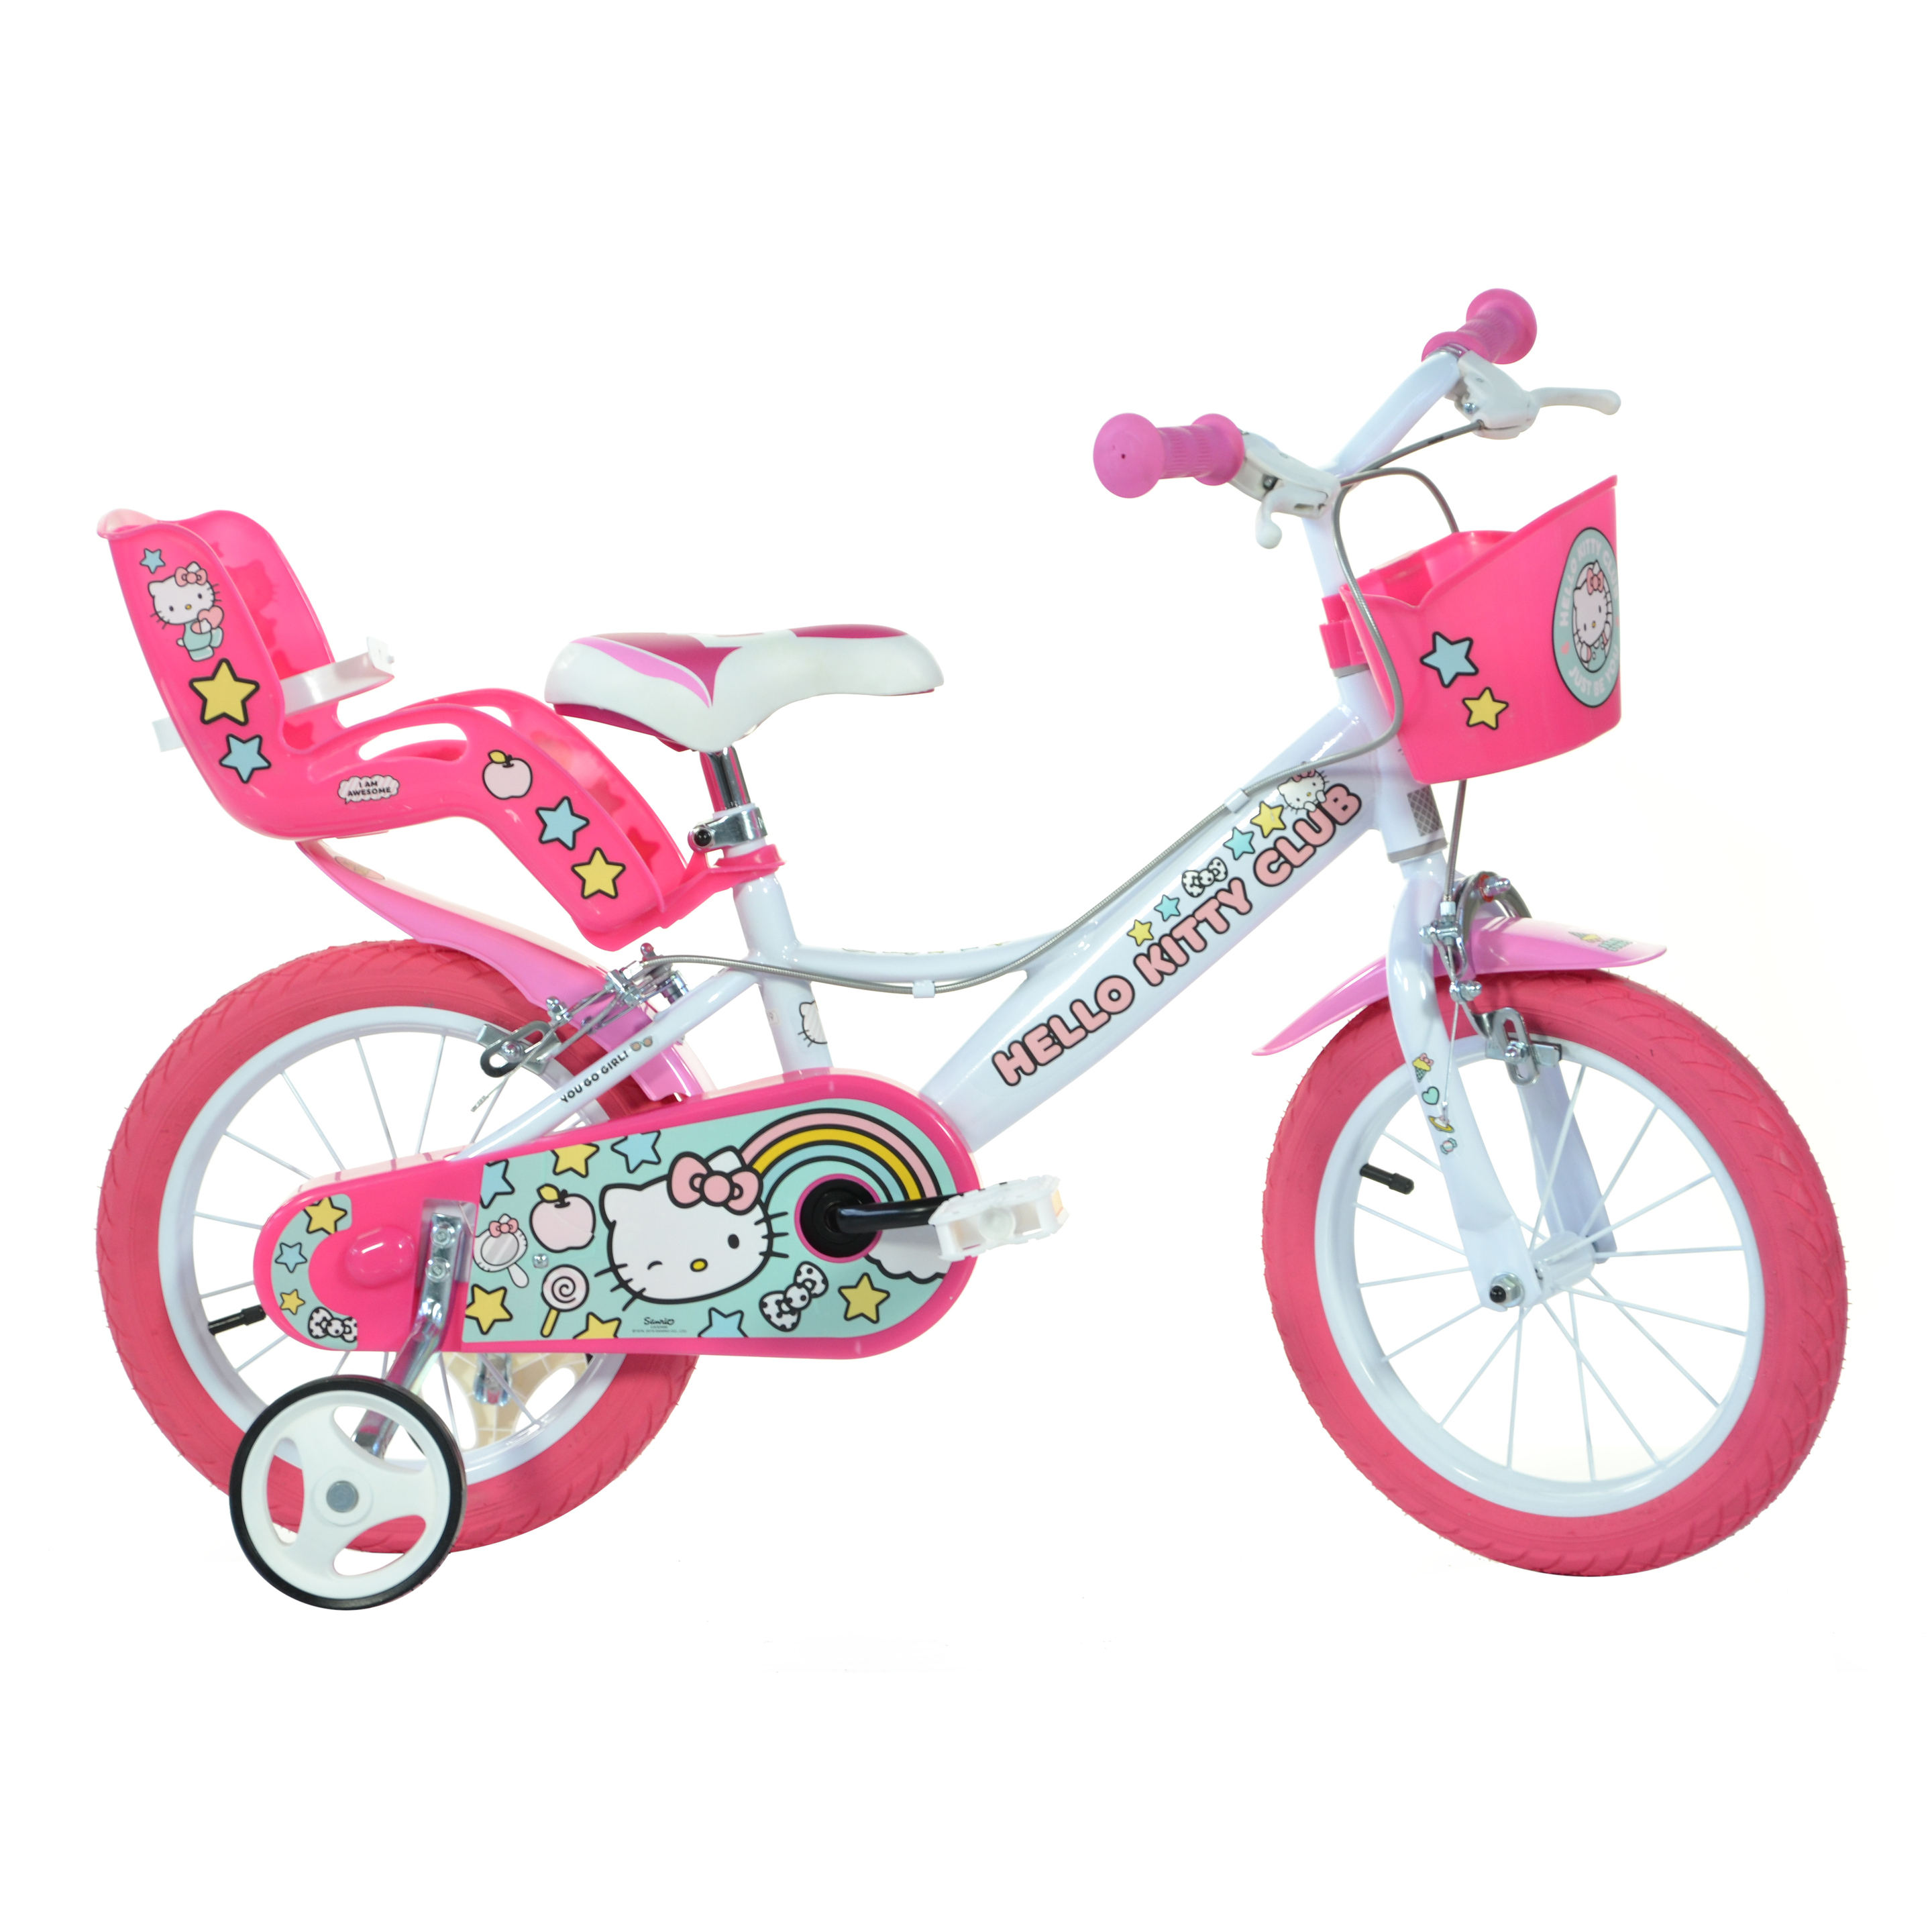 Bicicleta Infantil Hello Kitty 16 Pulgadas